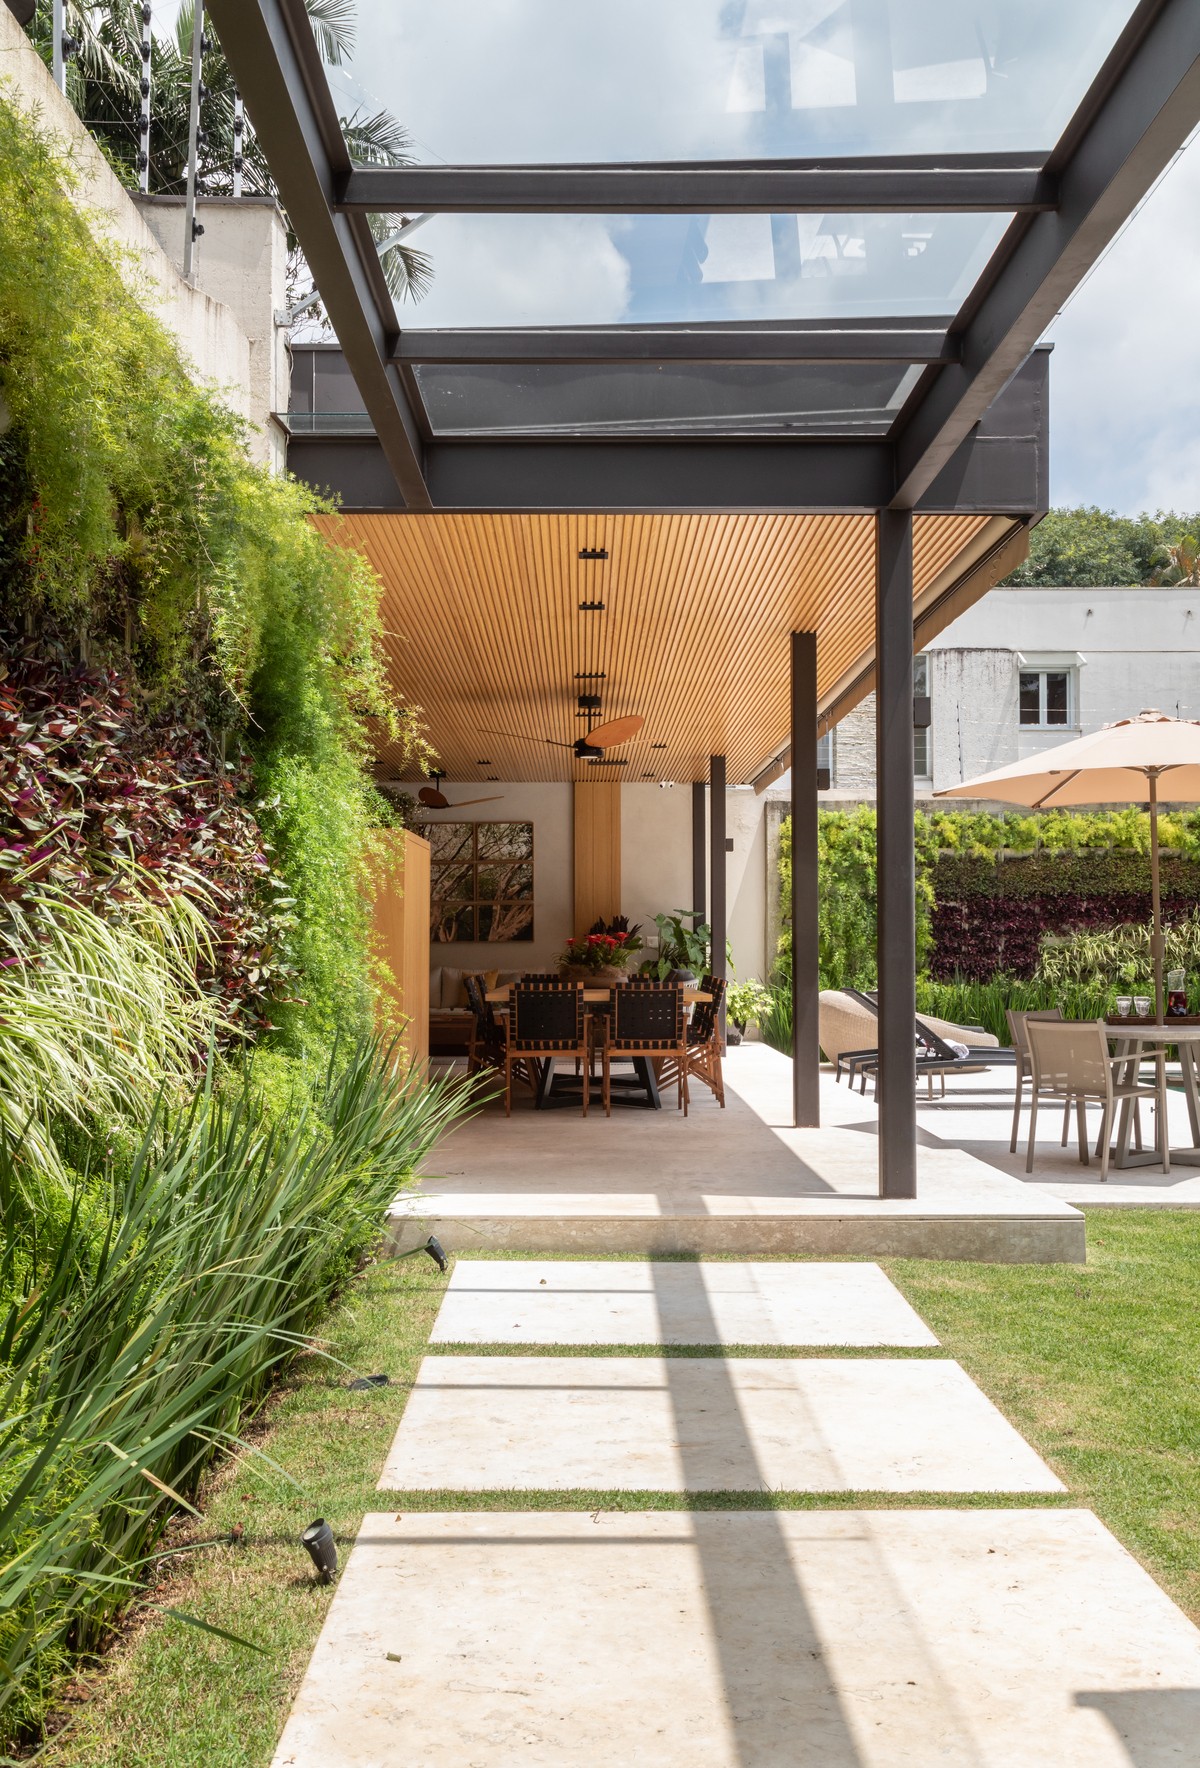 CORREDOR | As paredes verdes destacam as espéciem e criam o contato com a natureza pela extensão da casa (Foto: Evelyn Müller / Divulgação)